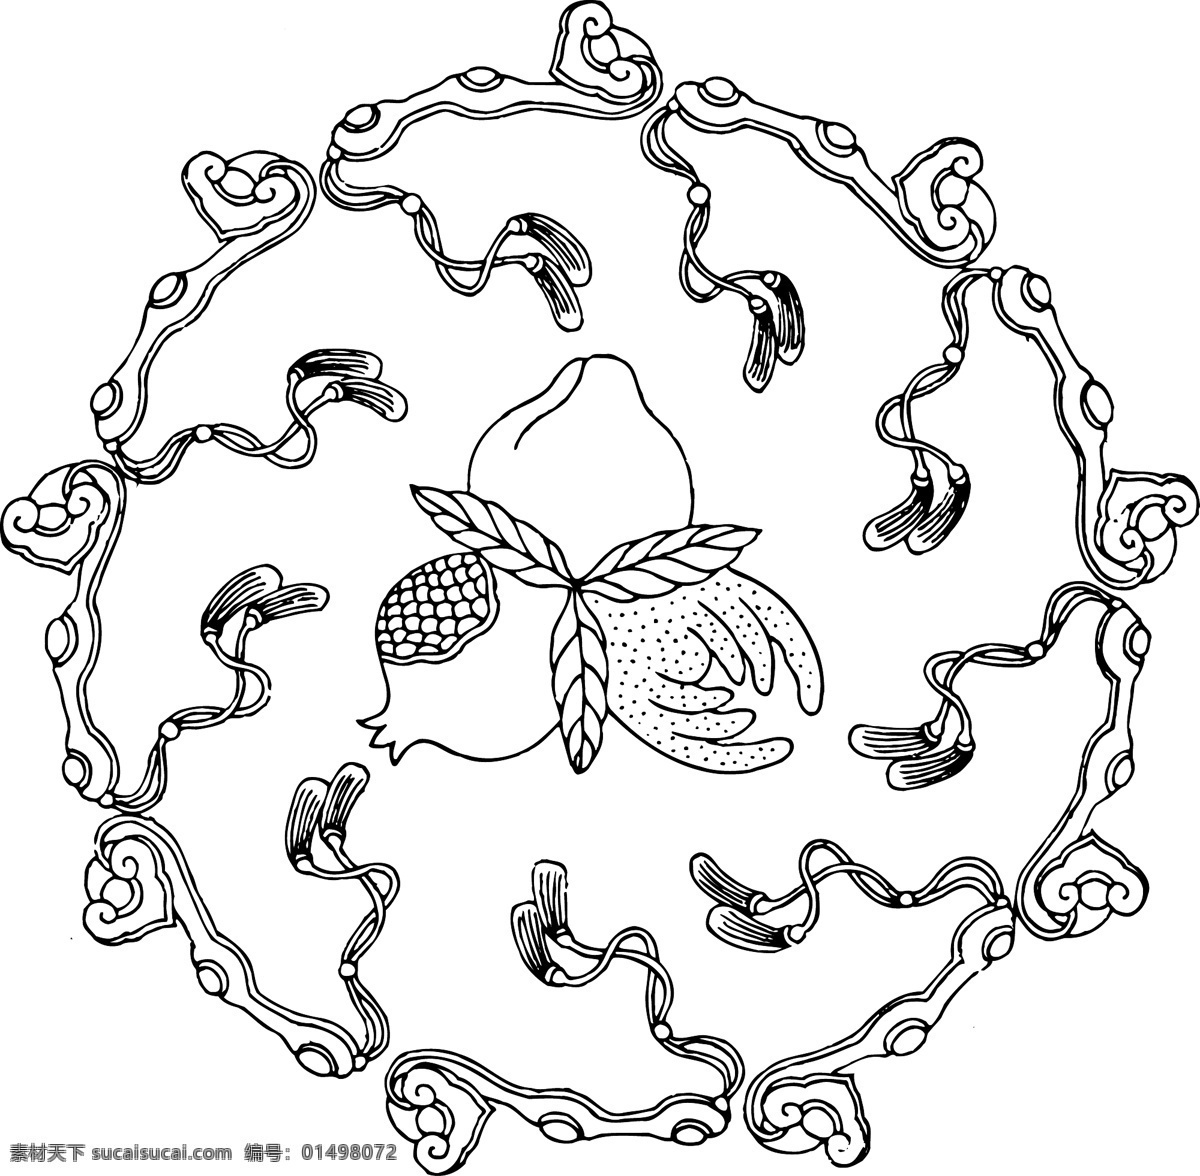 传统文化 石榴 桃子 文化艺术 玉如意 植物 瓜果纹 水果 纹 矢量 模板下载 水果纹 矢量图 日常生活